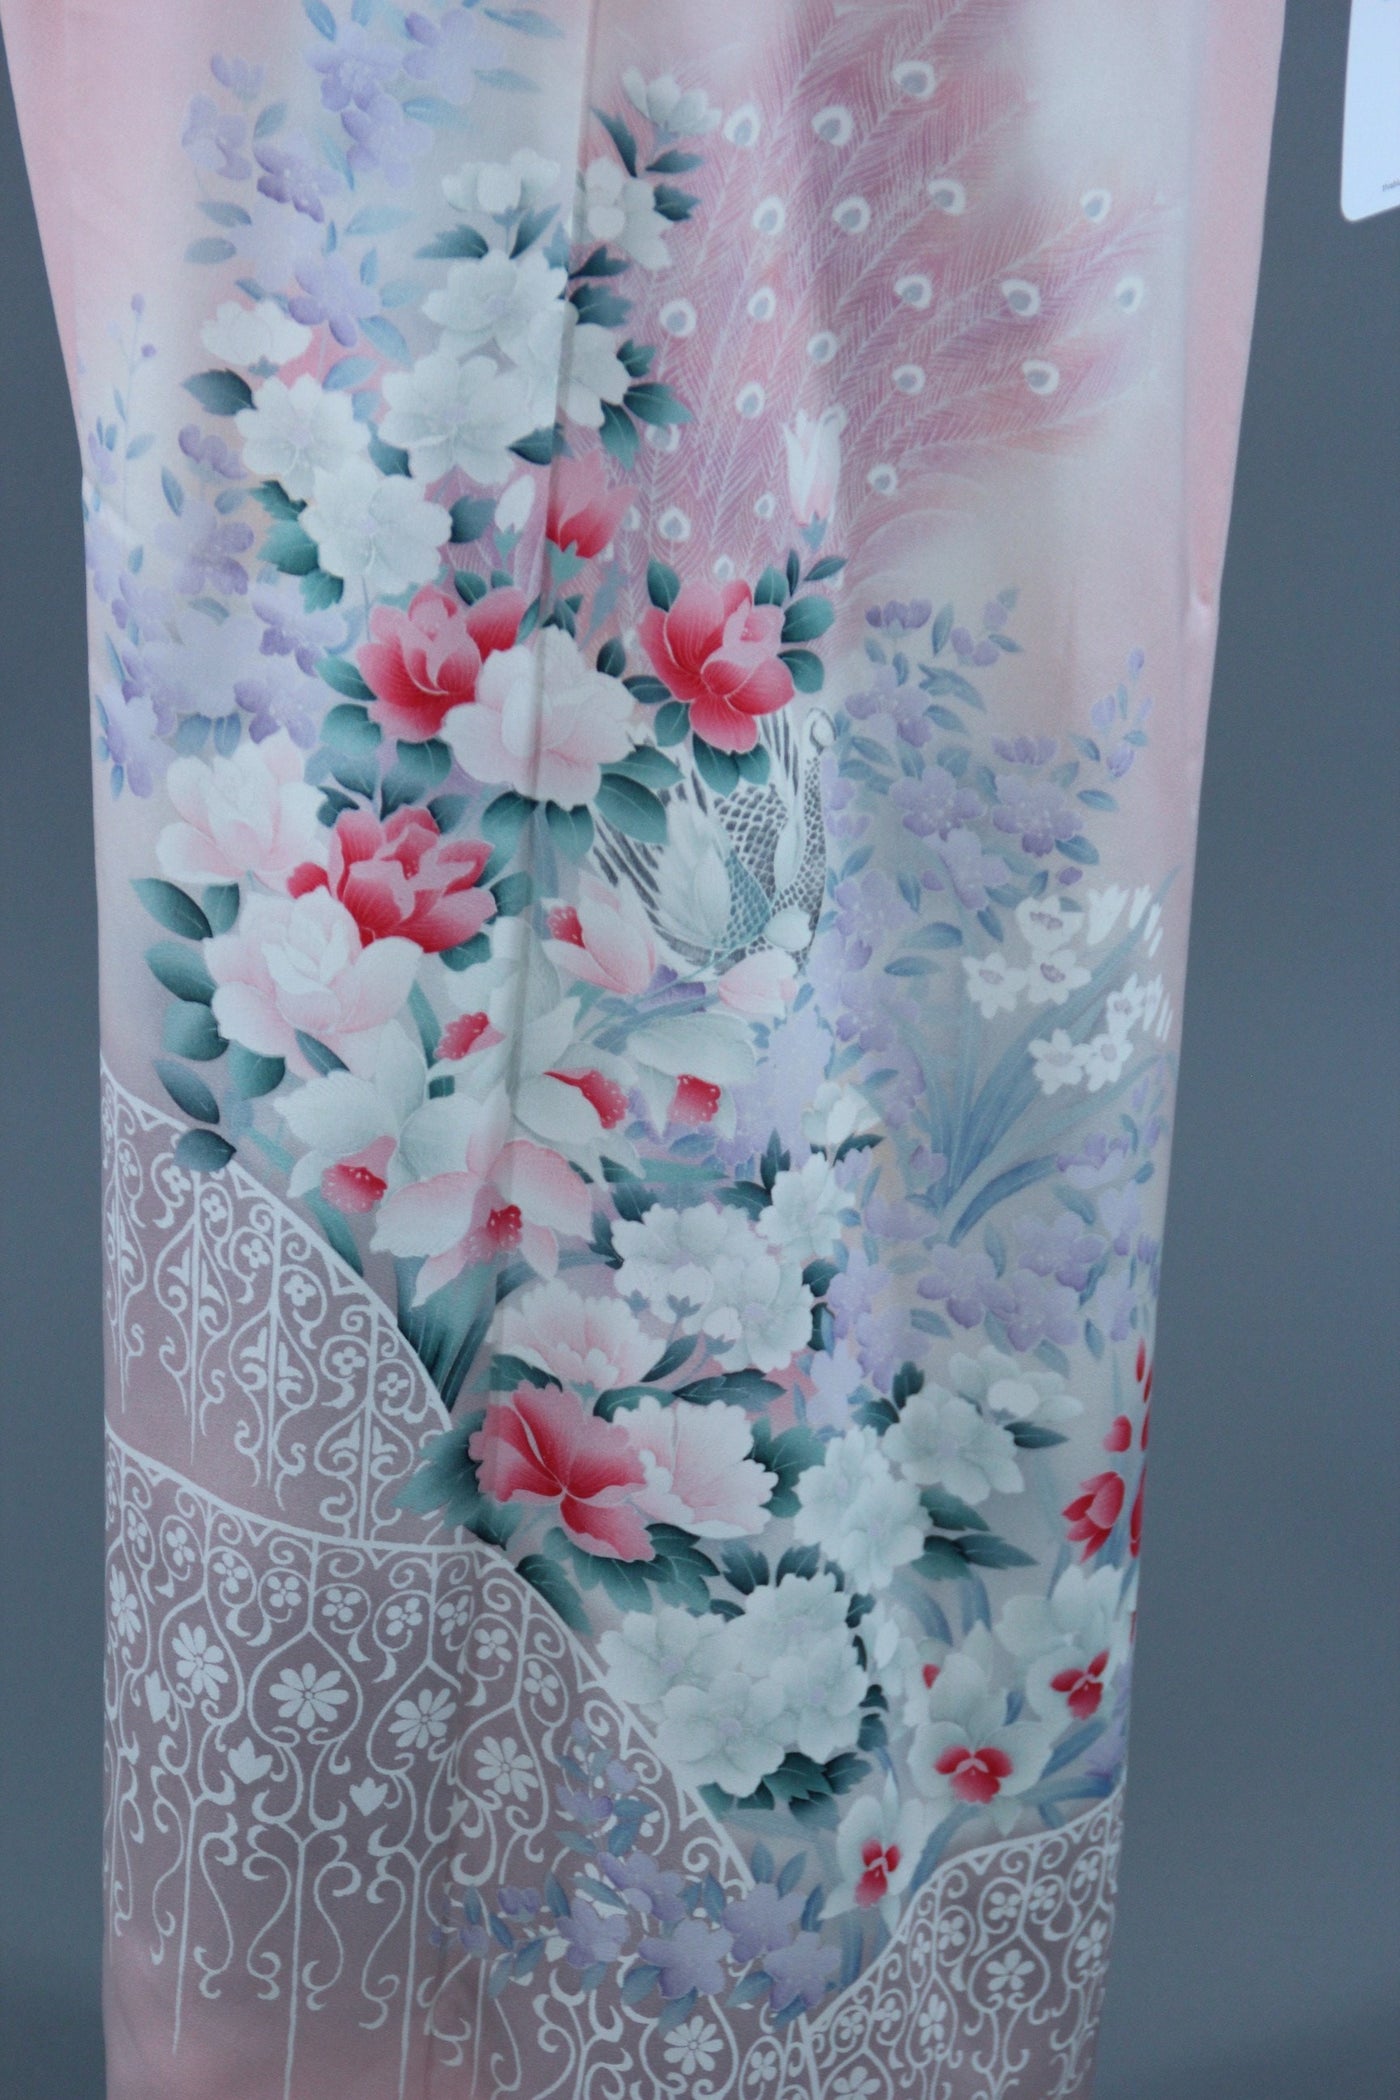 1960s Vintage Silk Kimono Robe / Pastel Pink Floral Print - ThisBlueBird